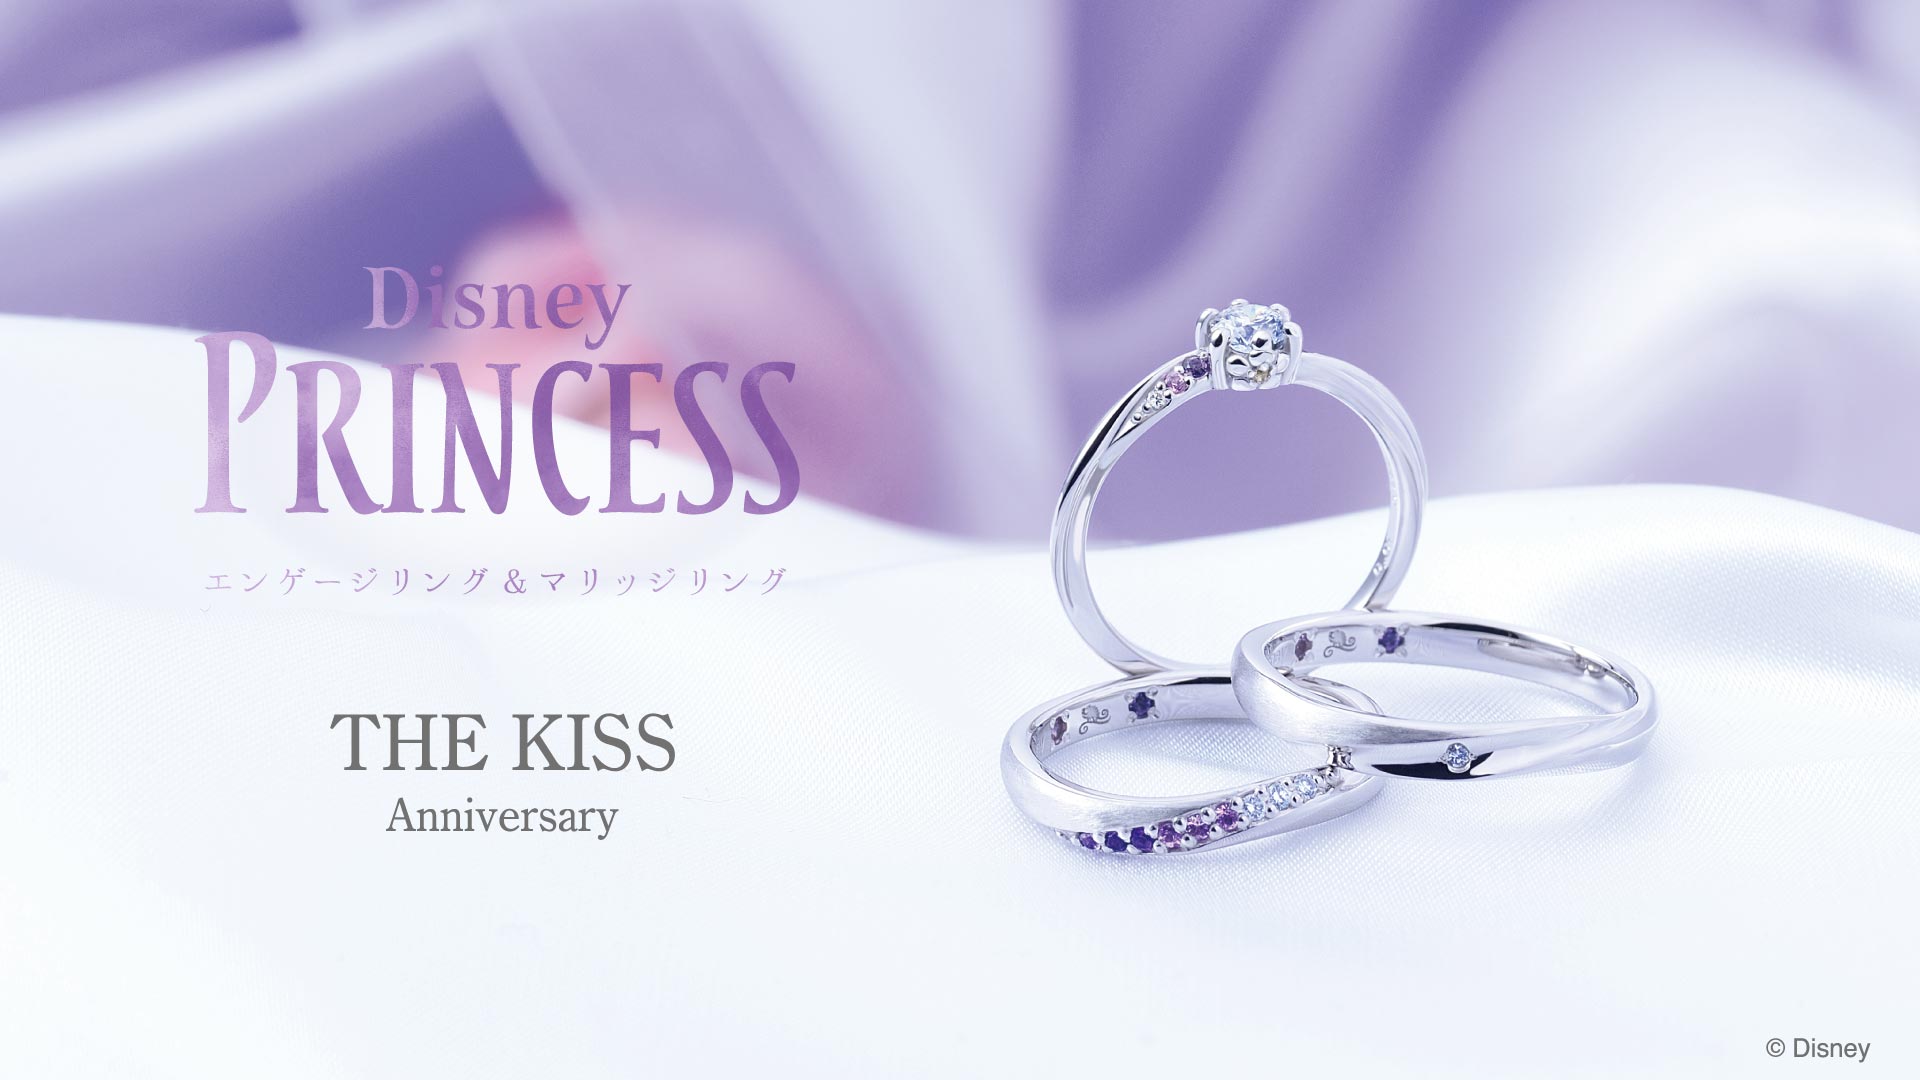 10 16 土 The Kiss Anniversary ラプンツェル ブライダルリング発売 Newscast